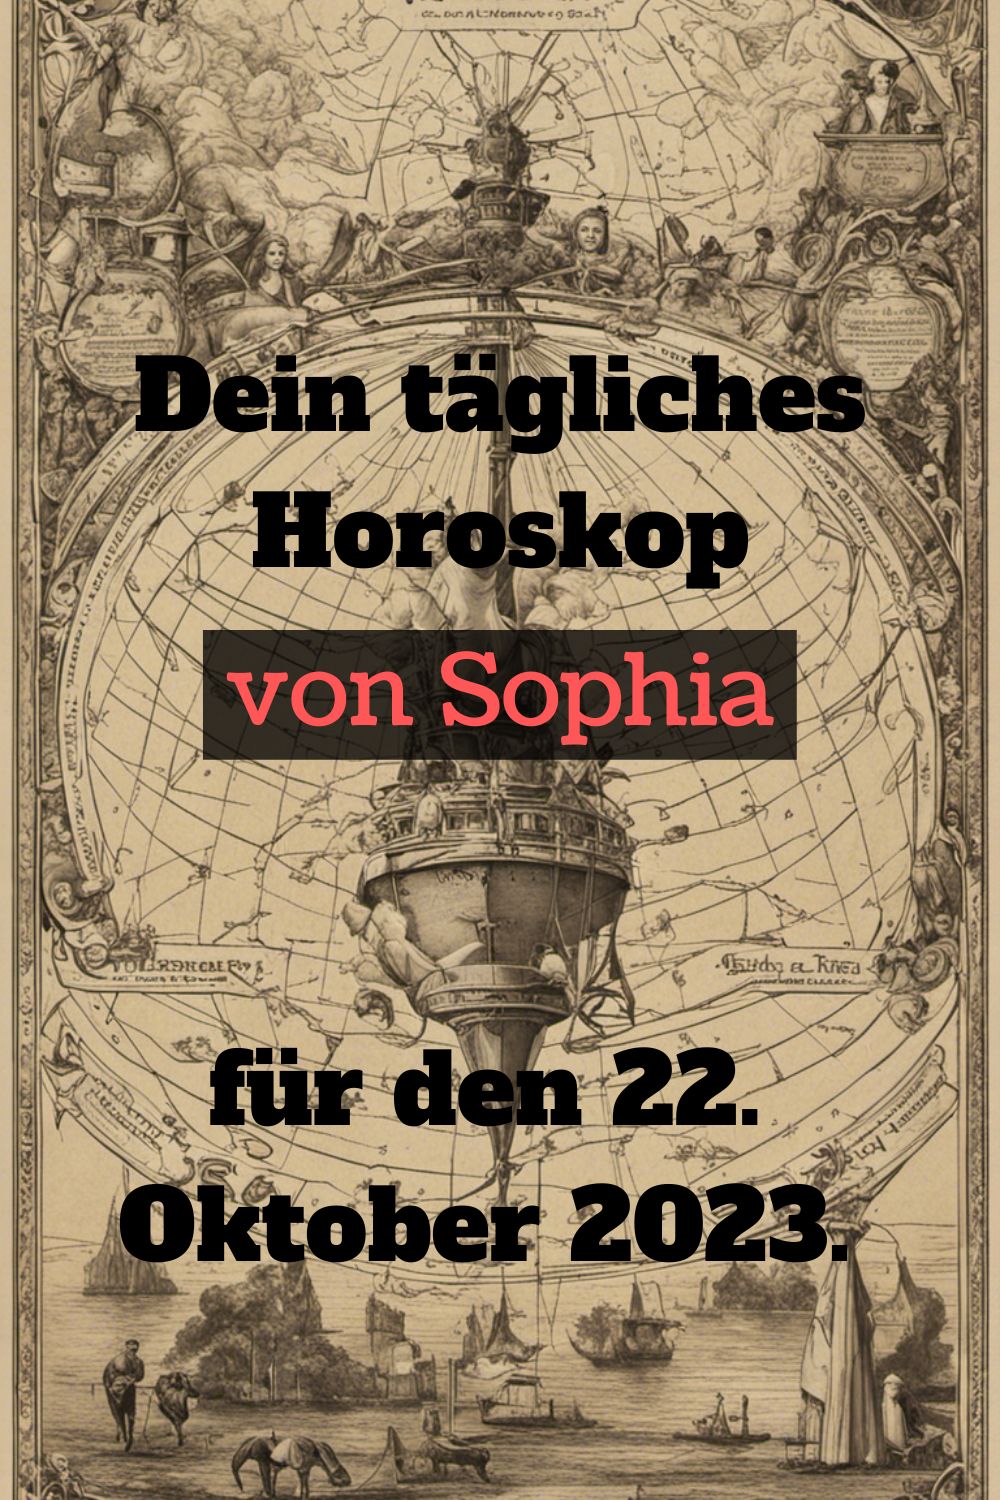 Dein-taegliches-Horoskop-von-Sophia-fuer-den-22.-Oktober-2023